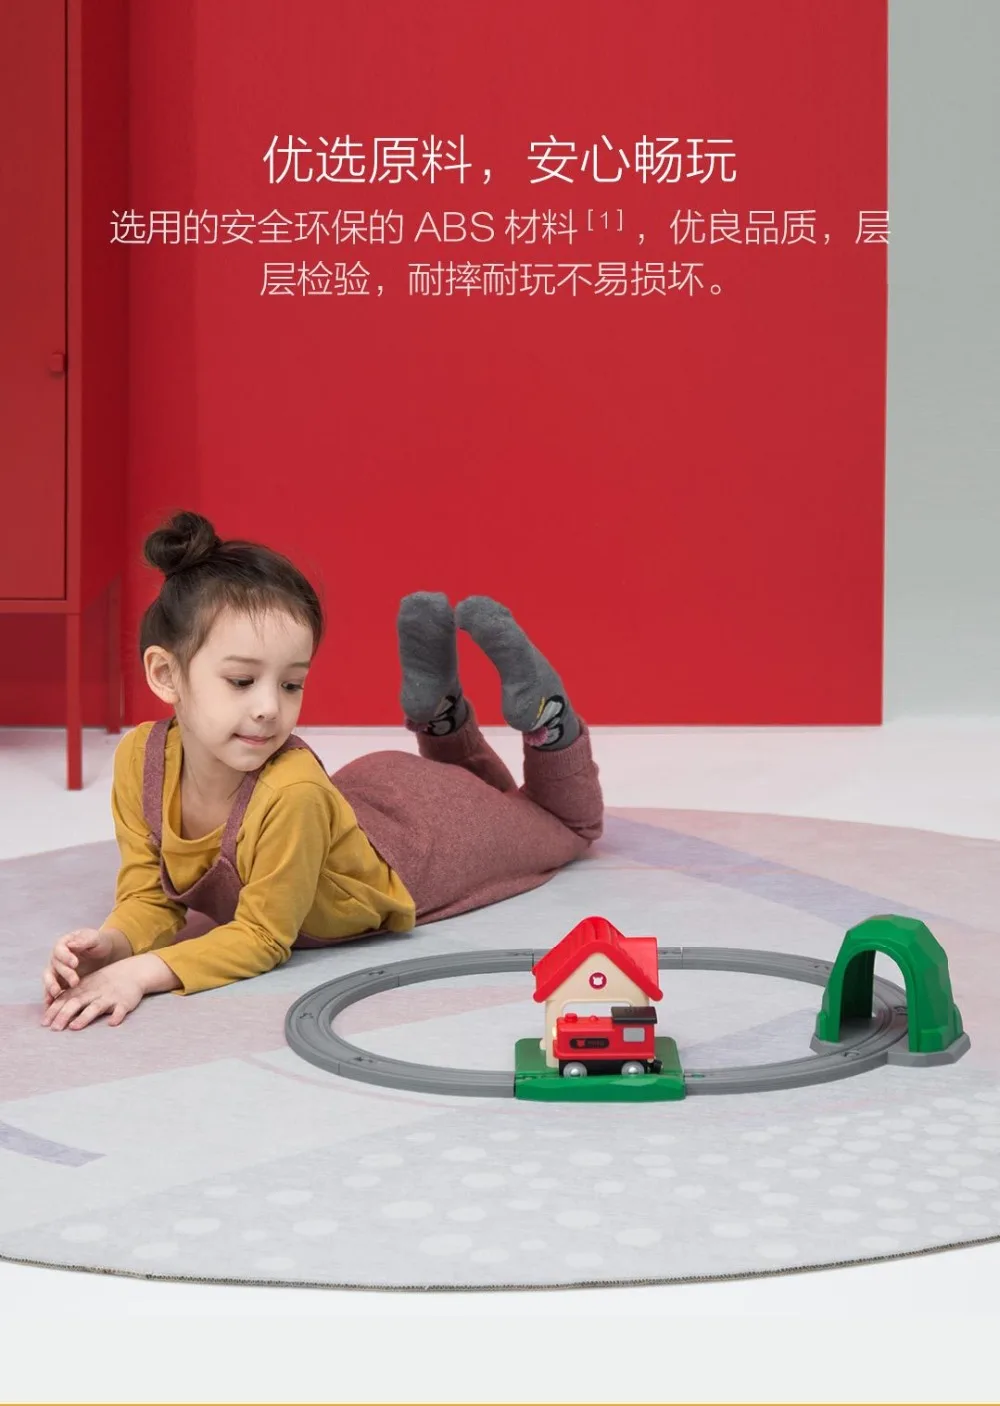 Xiaomi Mijia Rice rabbit трек строительный блок звук и светильник поезд набор цвет для развития ребенка интеллектуальные игрушки